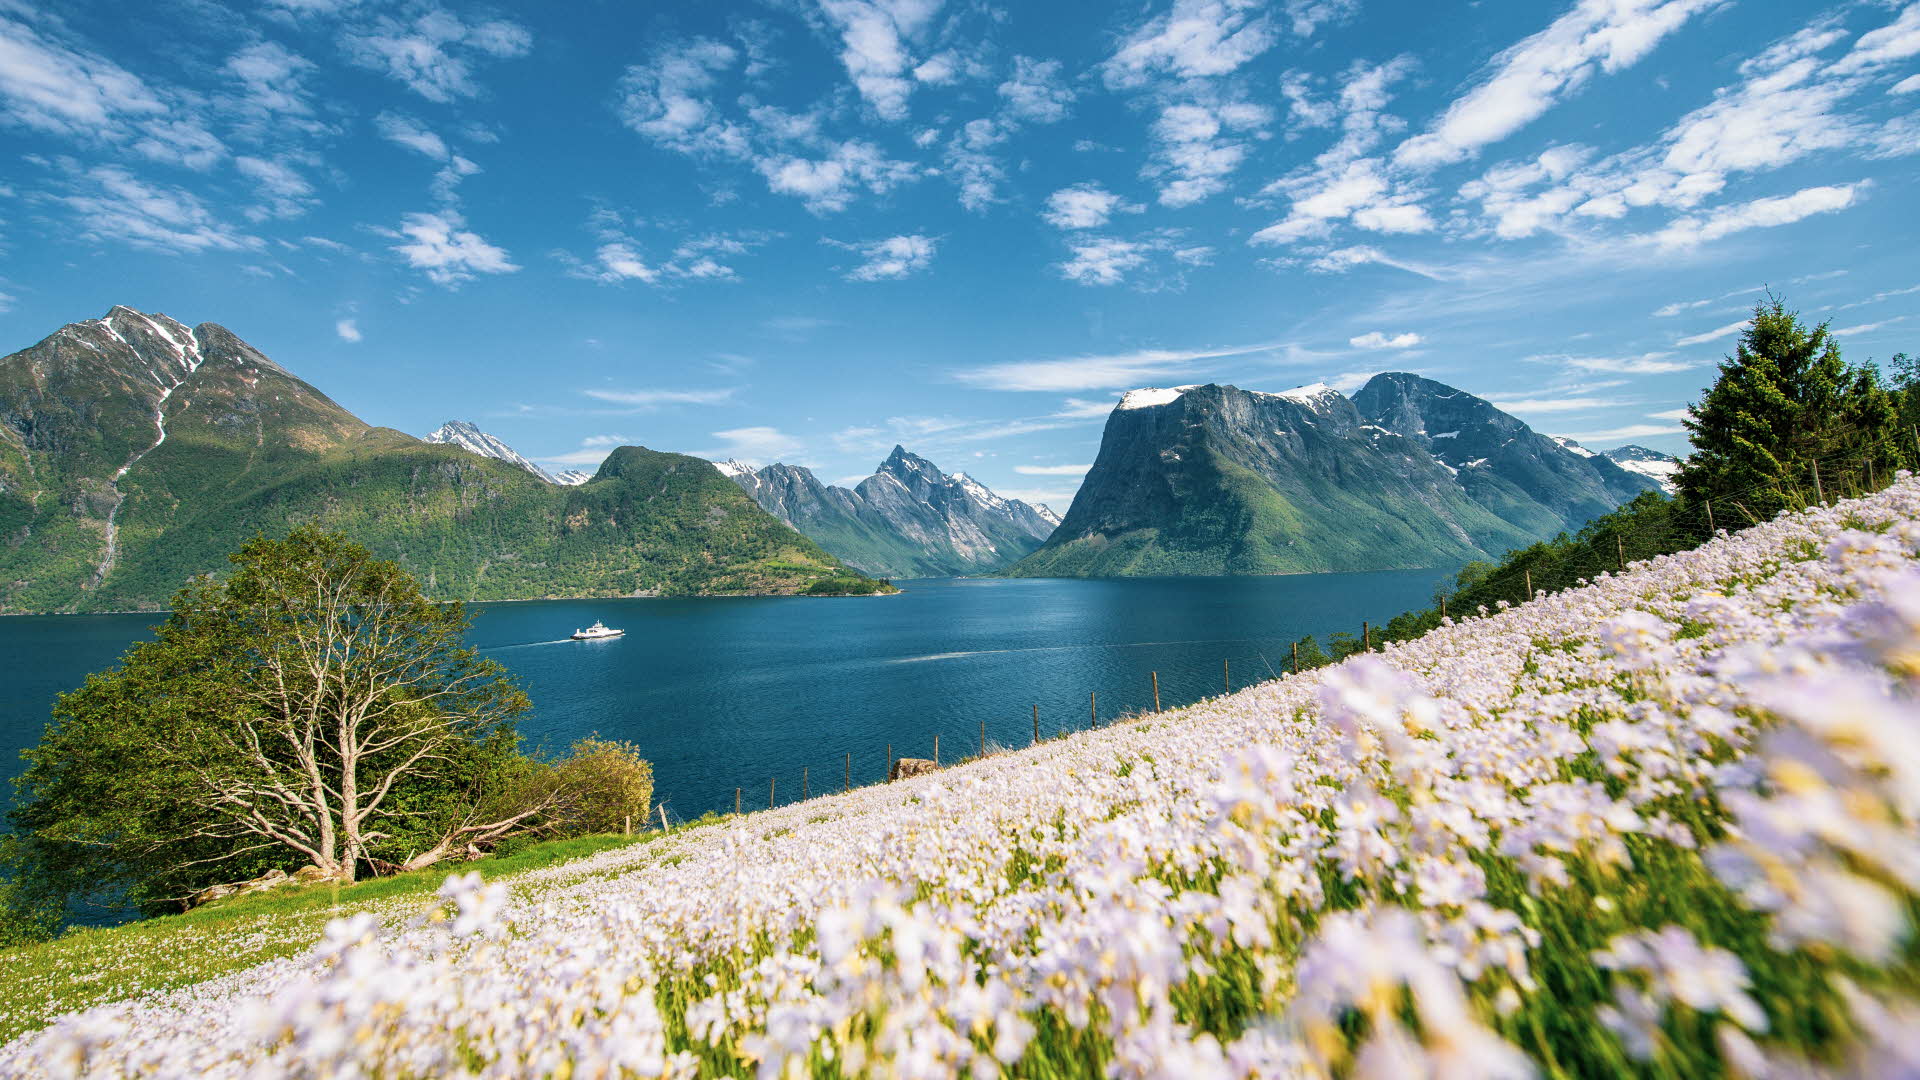 Campo de flores violetas frente al Hjørundfjord. Picos escarpados al fondo y un barco navegando.